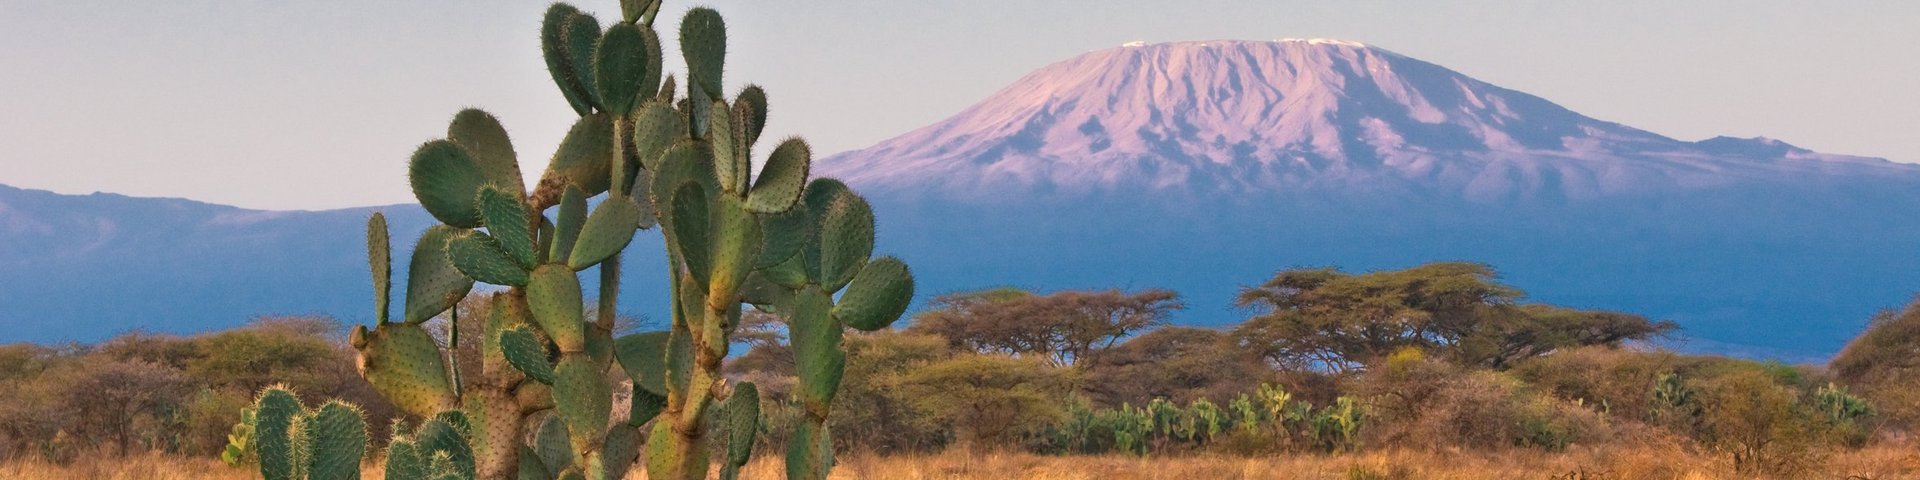 Der Kilimanjaro im Sonnenaufgangslicht